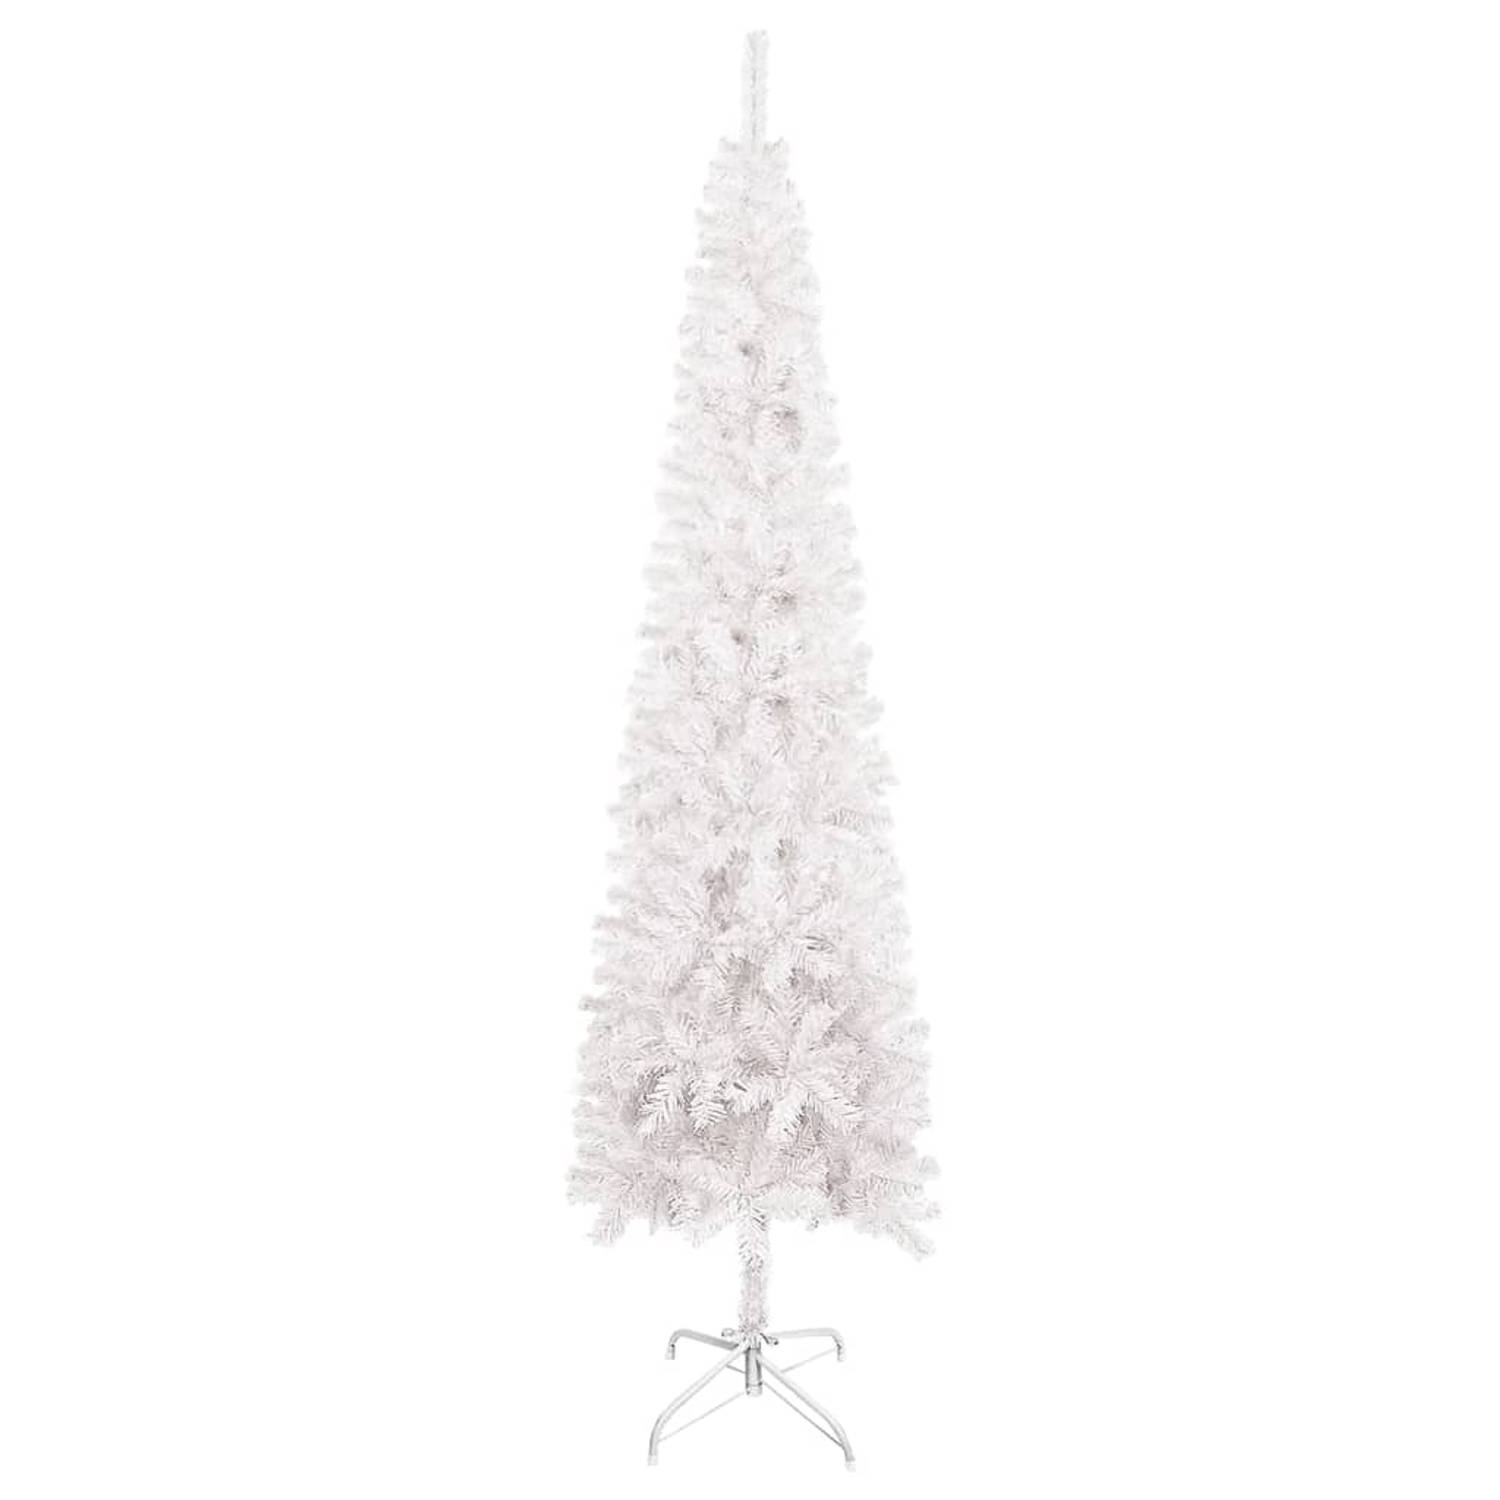 The Living Store Kerstboom V-240 - Smal for - Realistische PVC boom - Verstelbare takken - Stabiele stalen standaard - Duurzaam herbruikbaar - Wit - 240 cm hoog